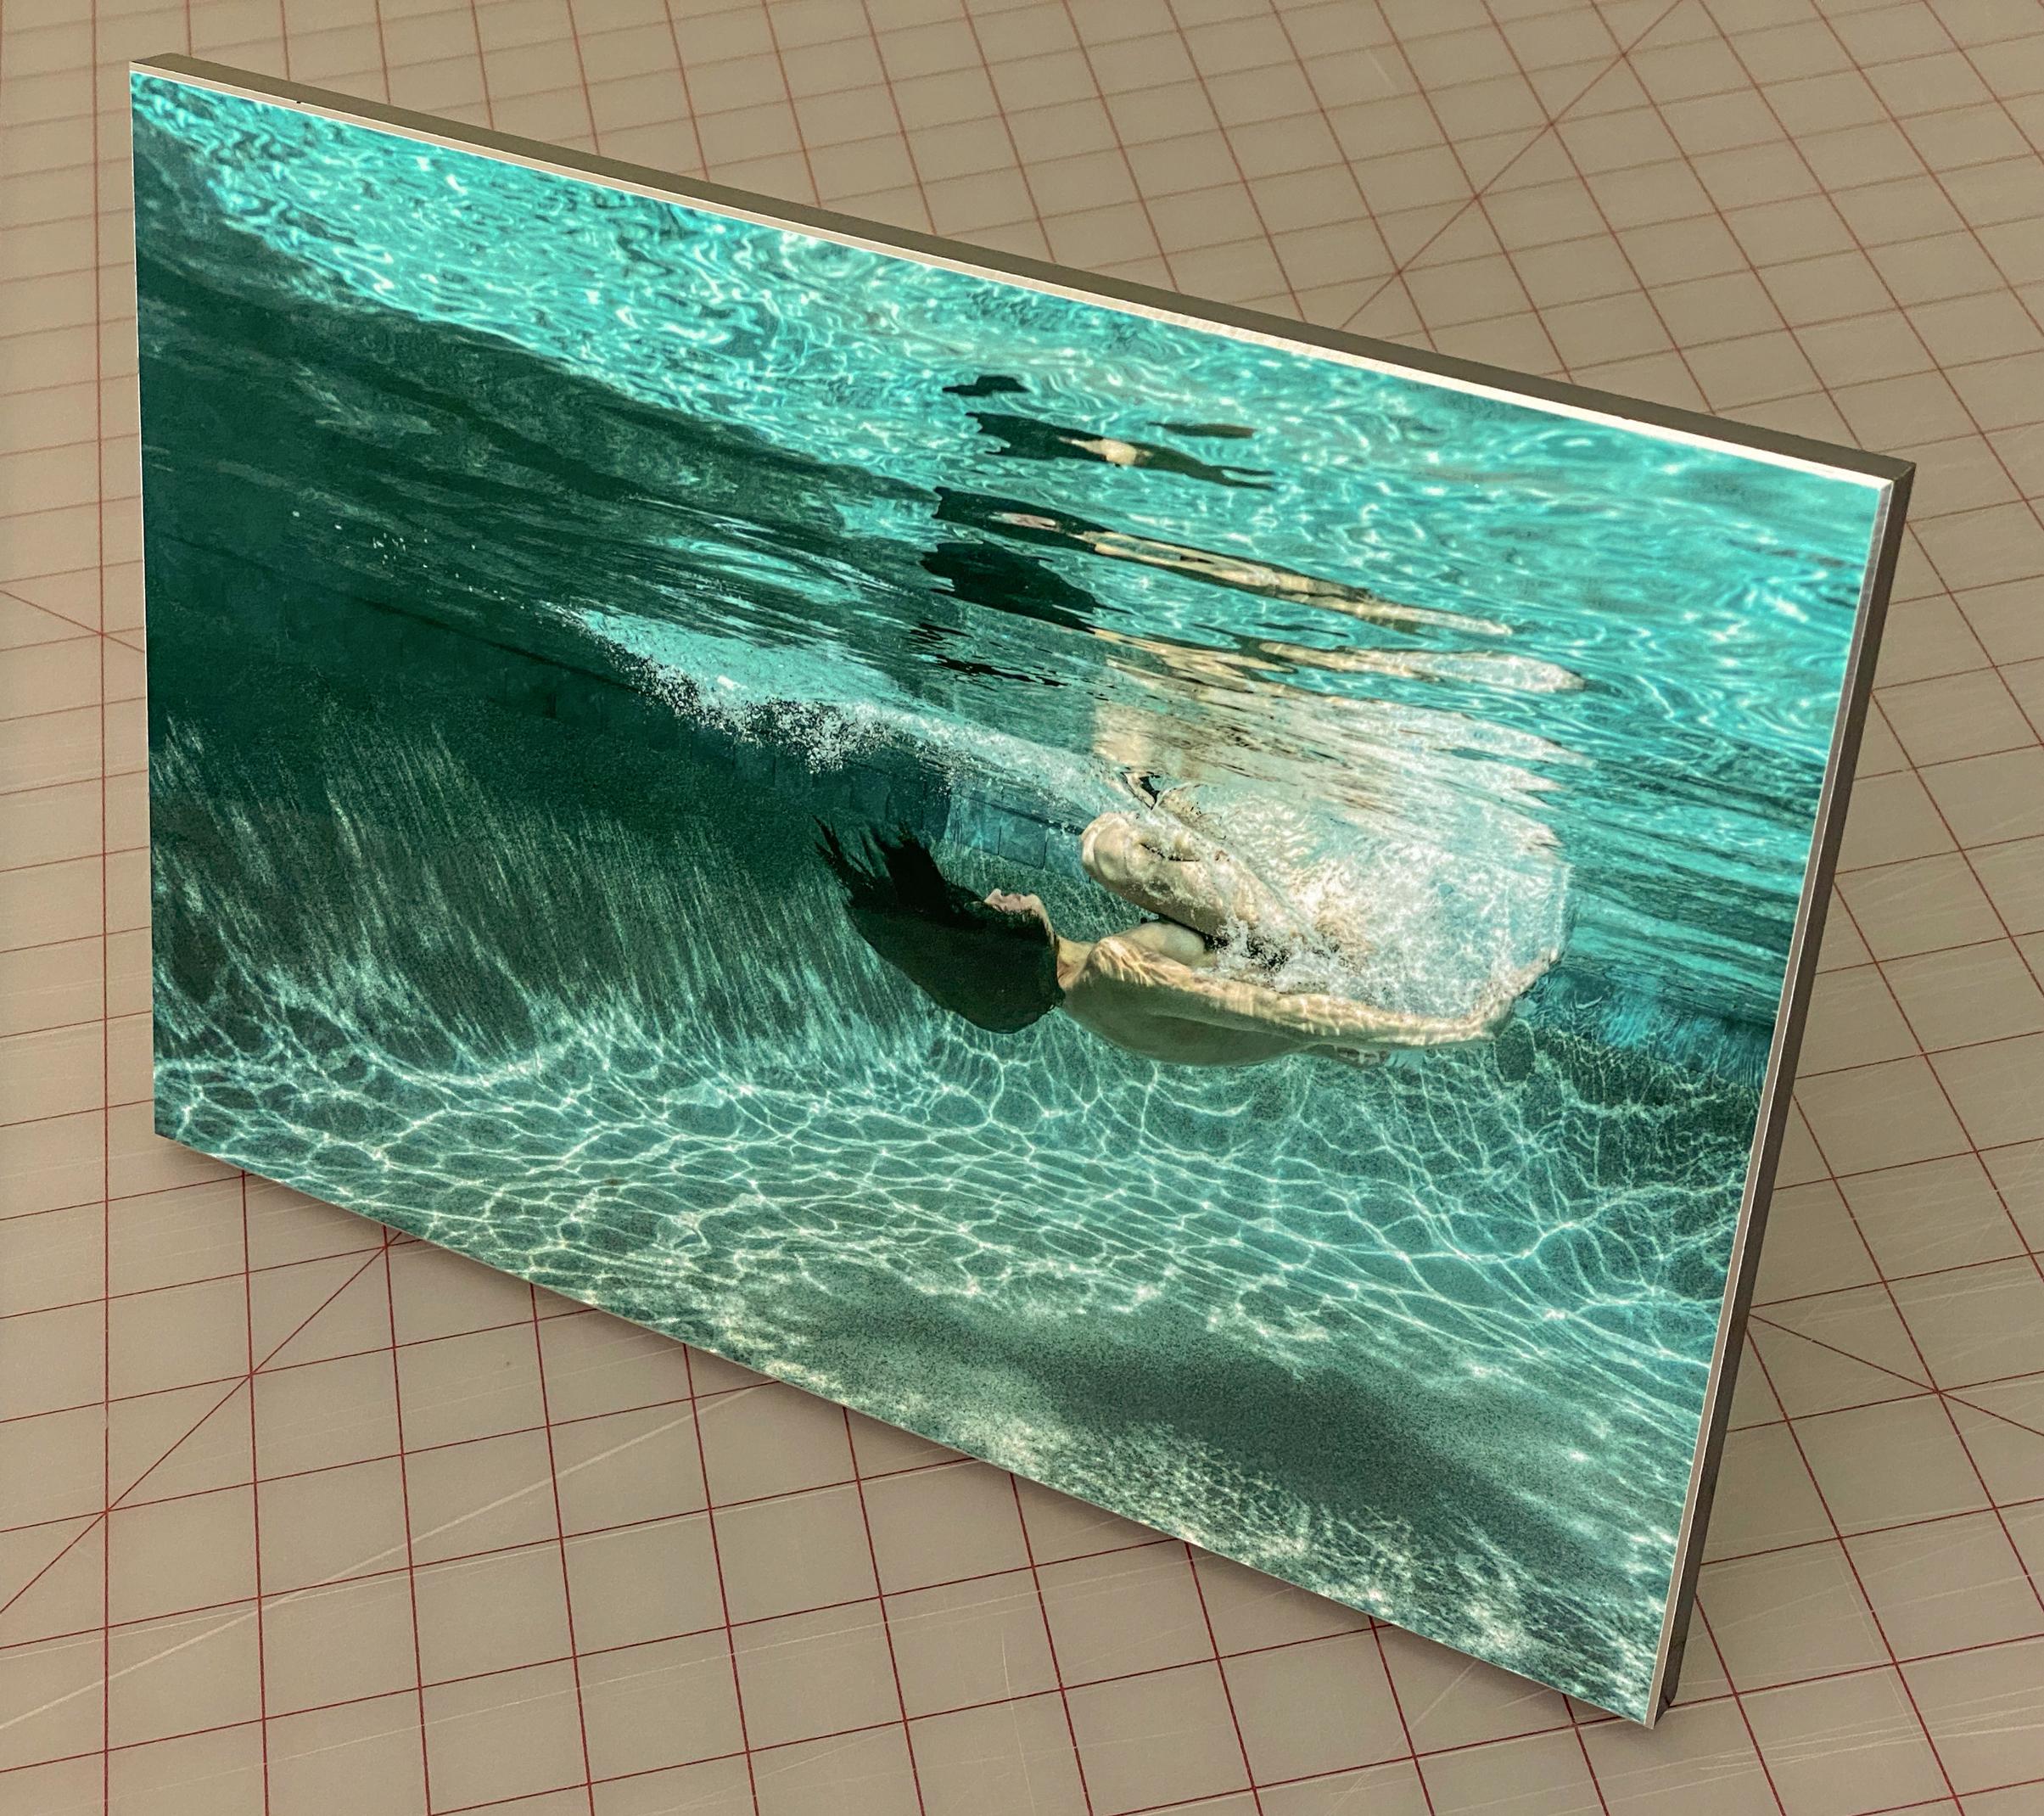 Unterwasseraufnahme einer nackten jungen Frau, die in einem Schwimmbecken taucht (rollt). Diese äußerst dynamische Fotografie ist reich an Grüntönen und sieht abstrakt aus, während sie in Wirklichkeit ganz figurativ ist.
Dieses Foto ist der erste